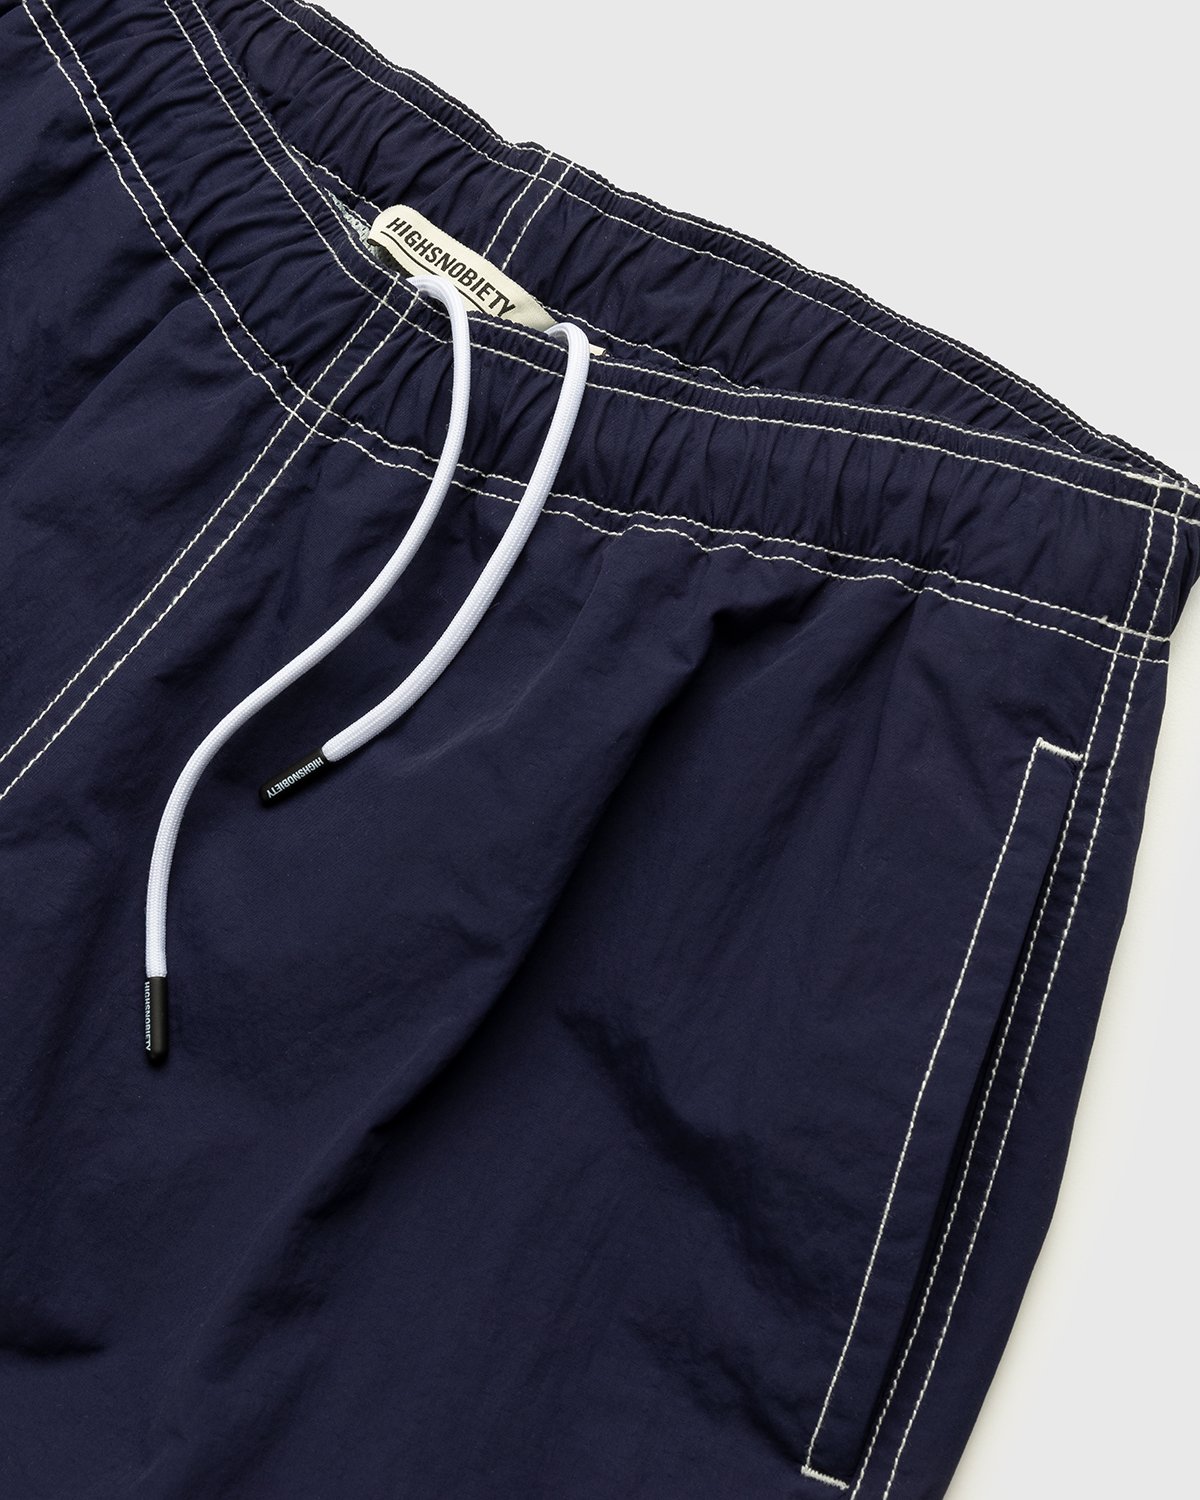 Highsnobiety - Contrast Brushed Nylon Water Shorts Navy - Clothing - Blue - Image 4